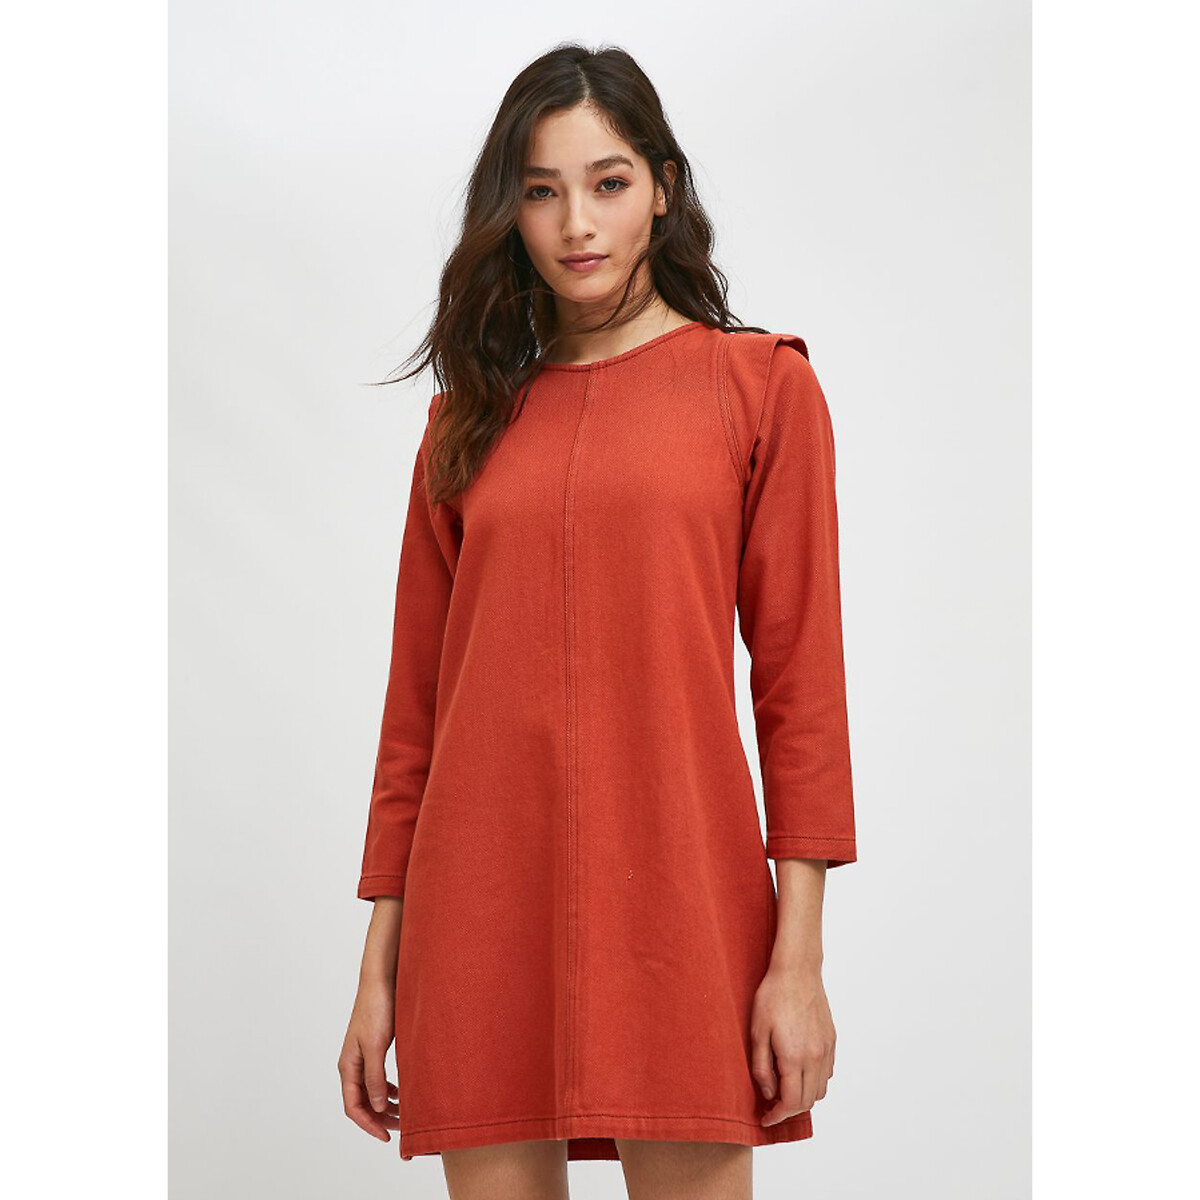 Короткое платье с рукавами 34 L оранжевый короткое платье с рукавами 34 l оранжевый